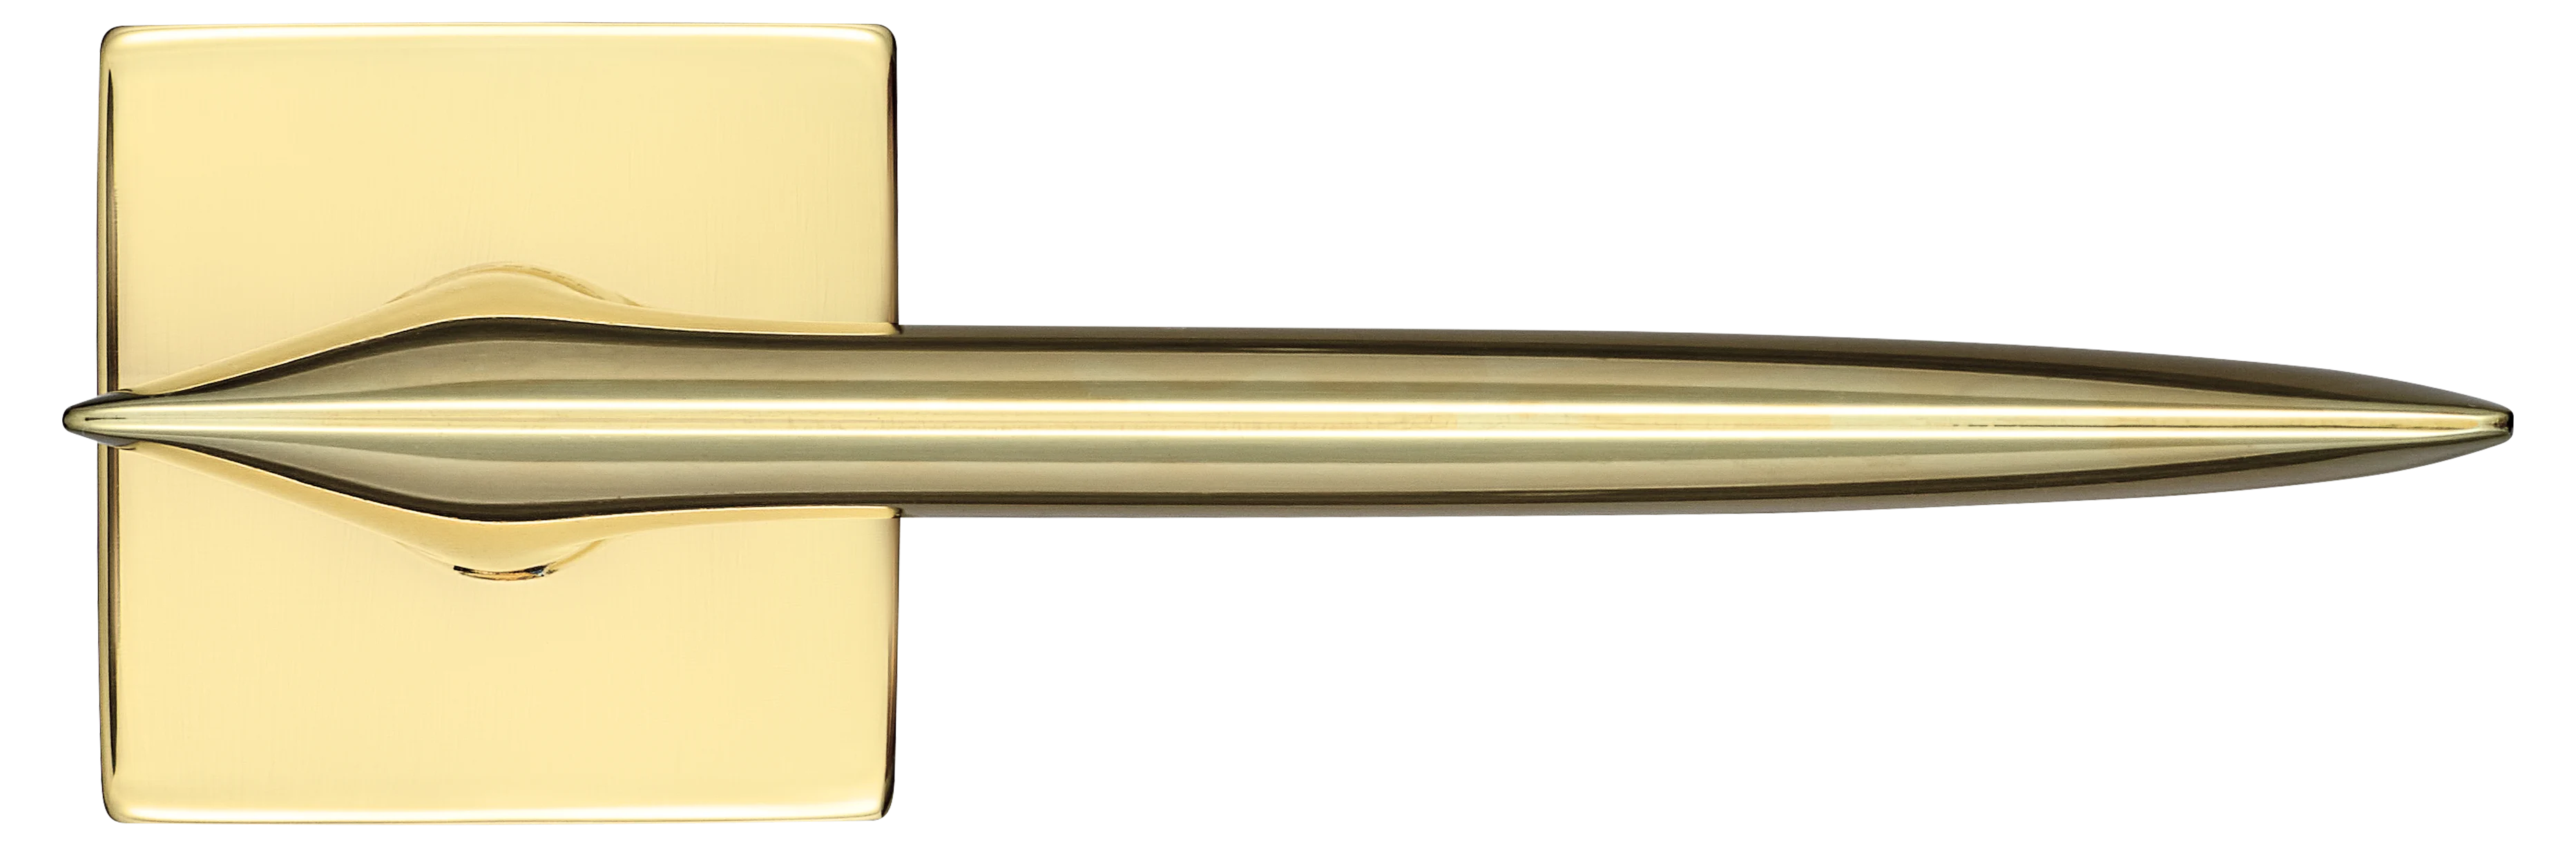 GALACTIC S5 OTL, ручка дверная, цвет -  золото фото купить в Липецке